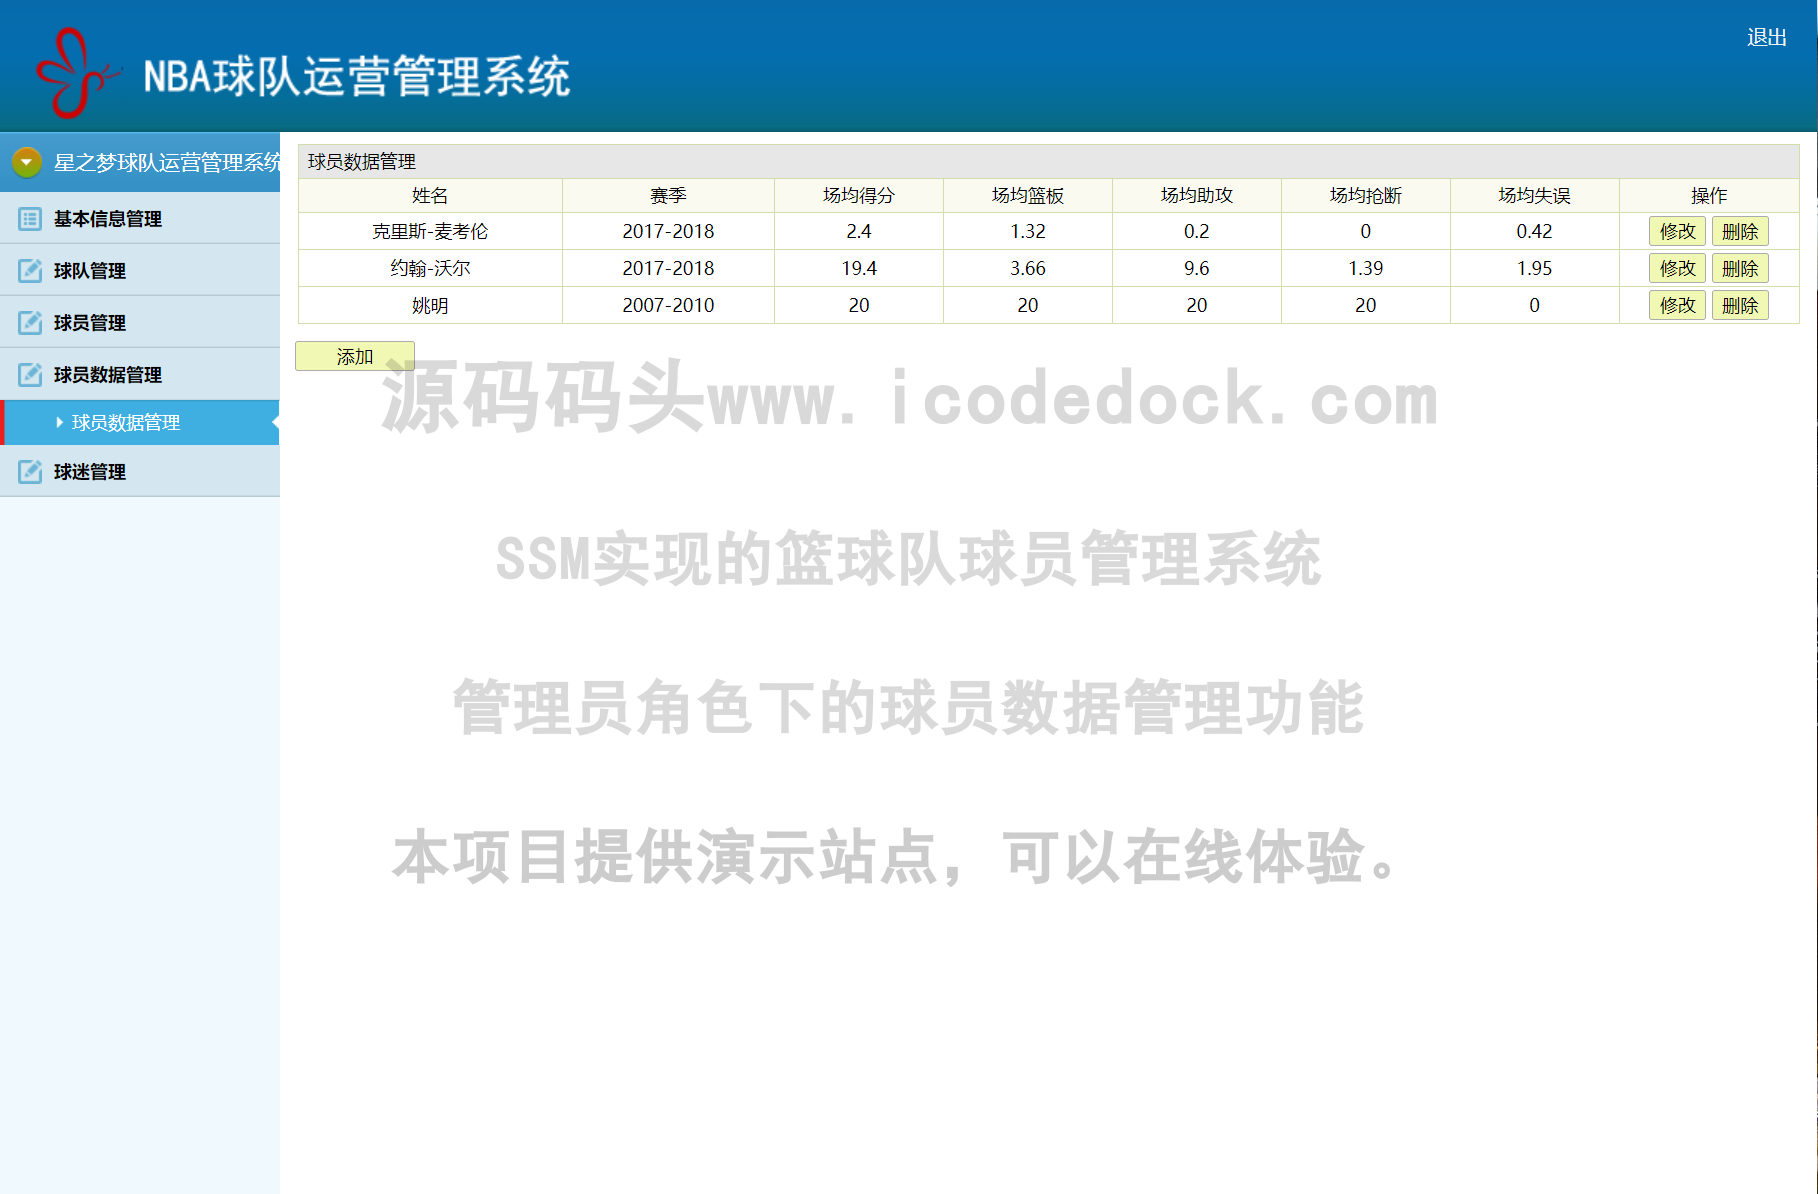 源码码头-SSM实现的篮球队球员管理系统-管理员角色-球员数据管理